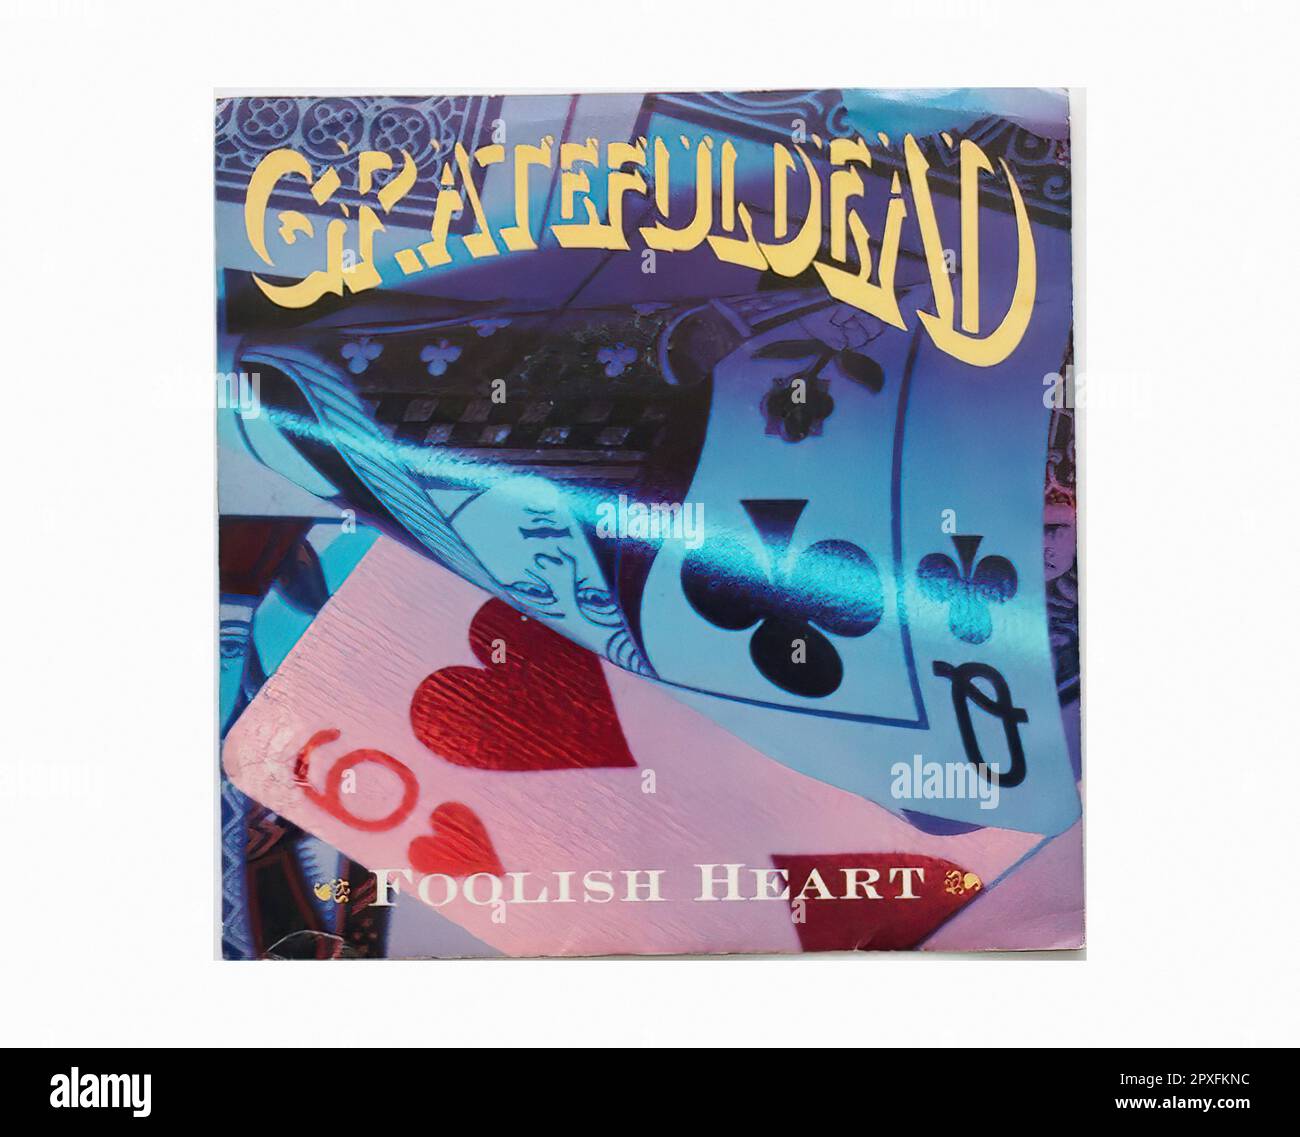 Grahful Dead 1989 10 A - Vintage 45 R.P.M Music Vinyl Record Banque D'Images